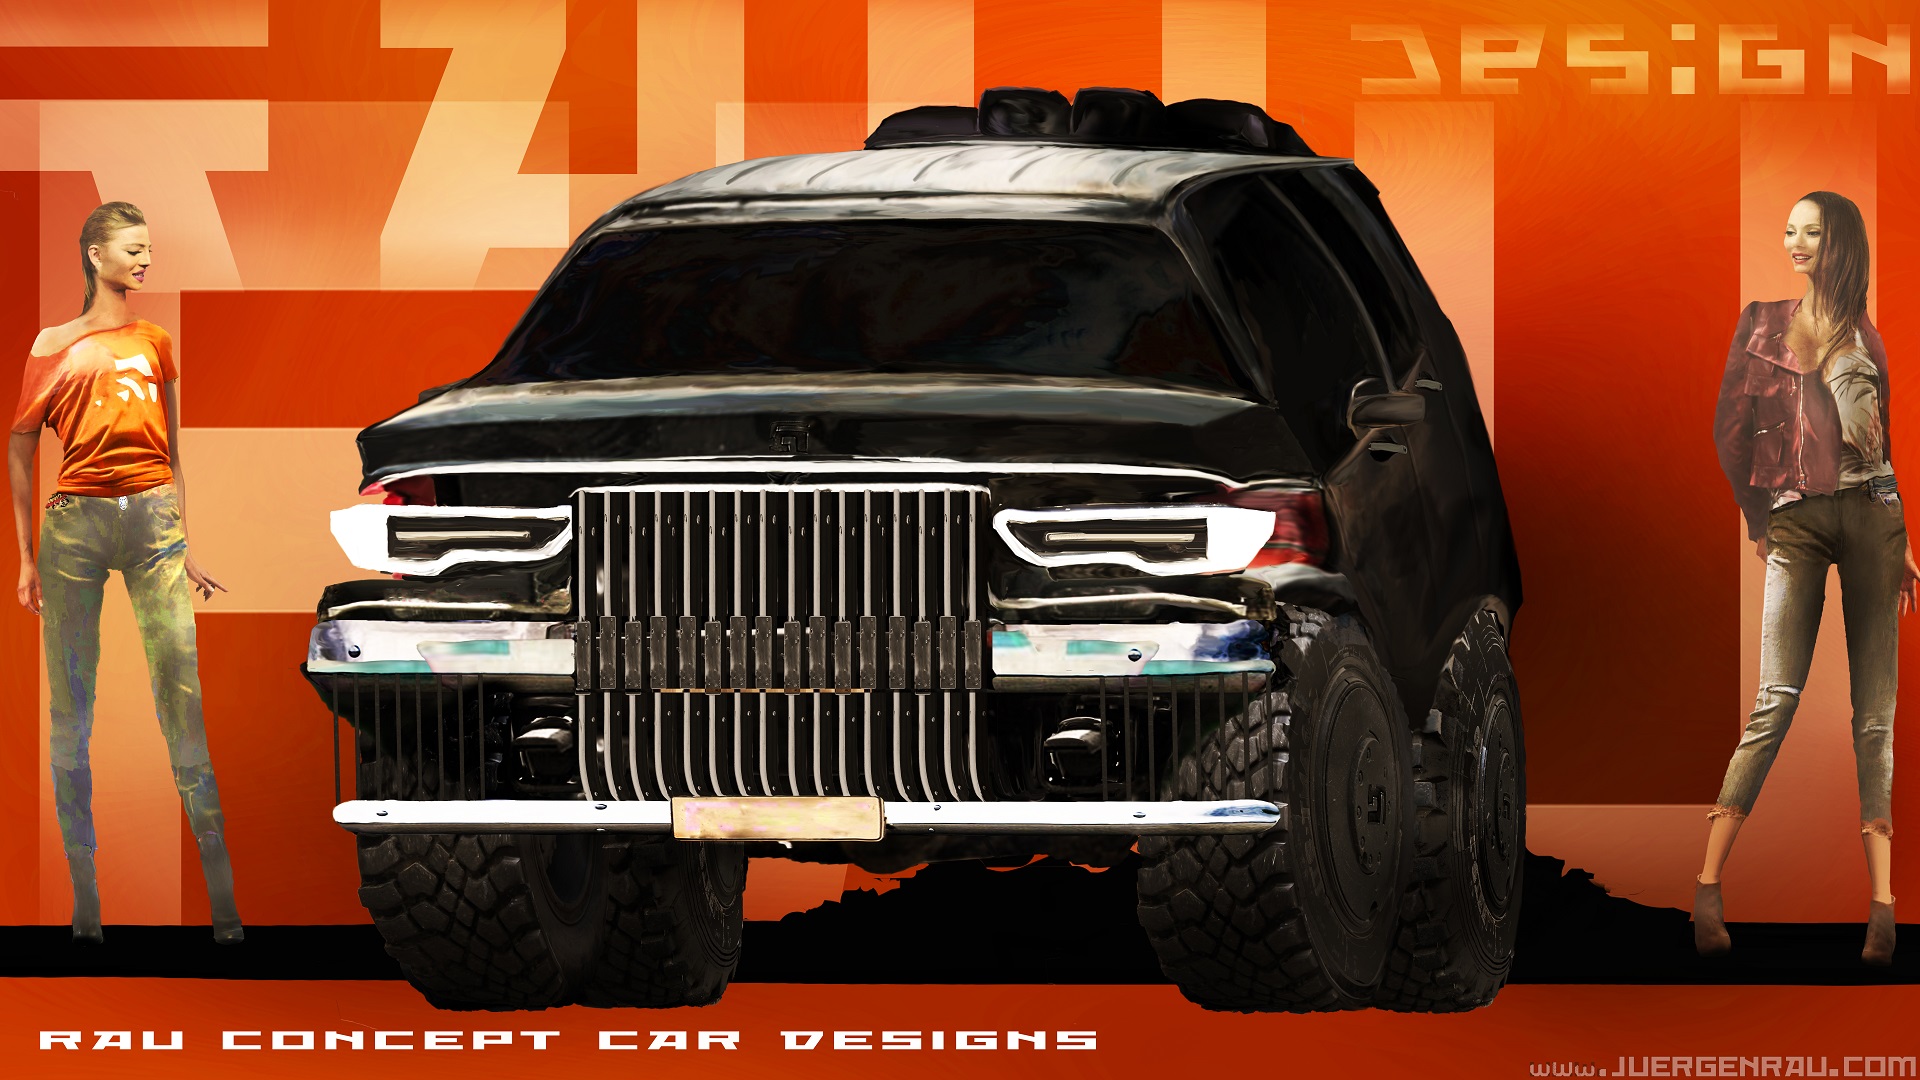 
concept car SUV design RAU automotive exterior.
